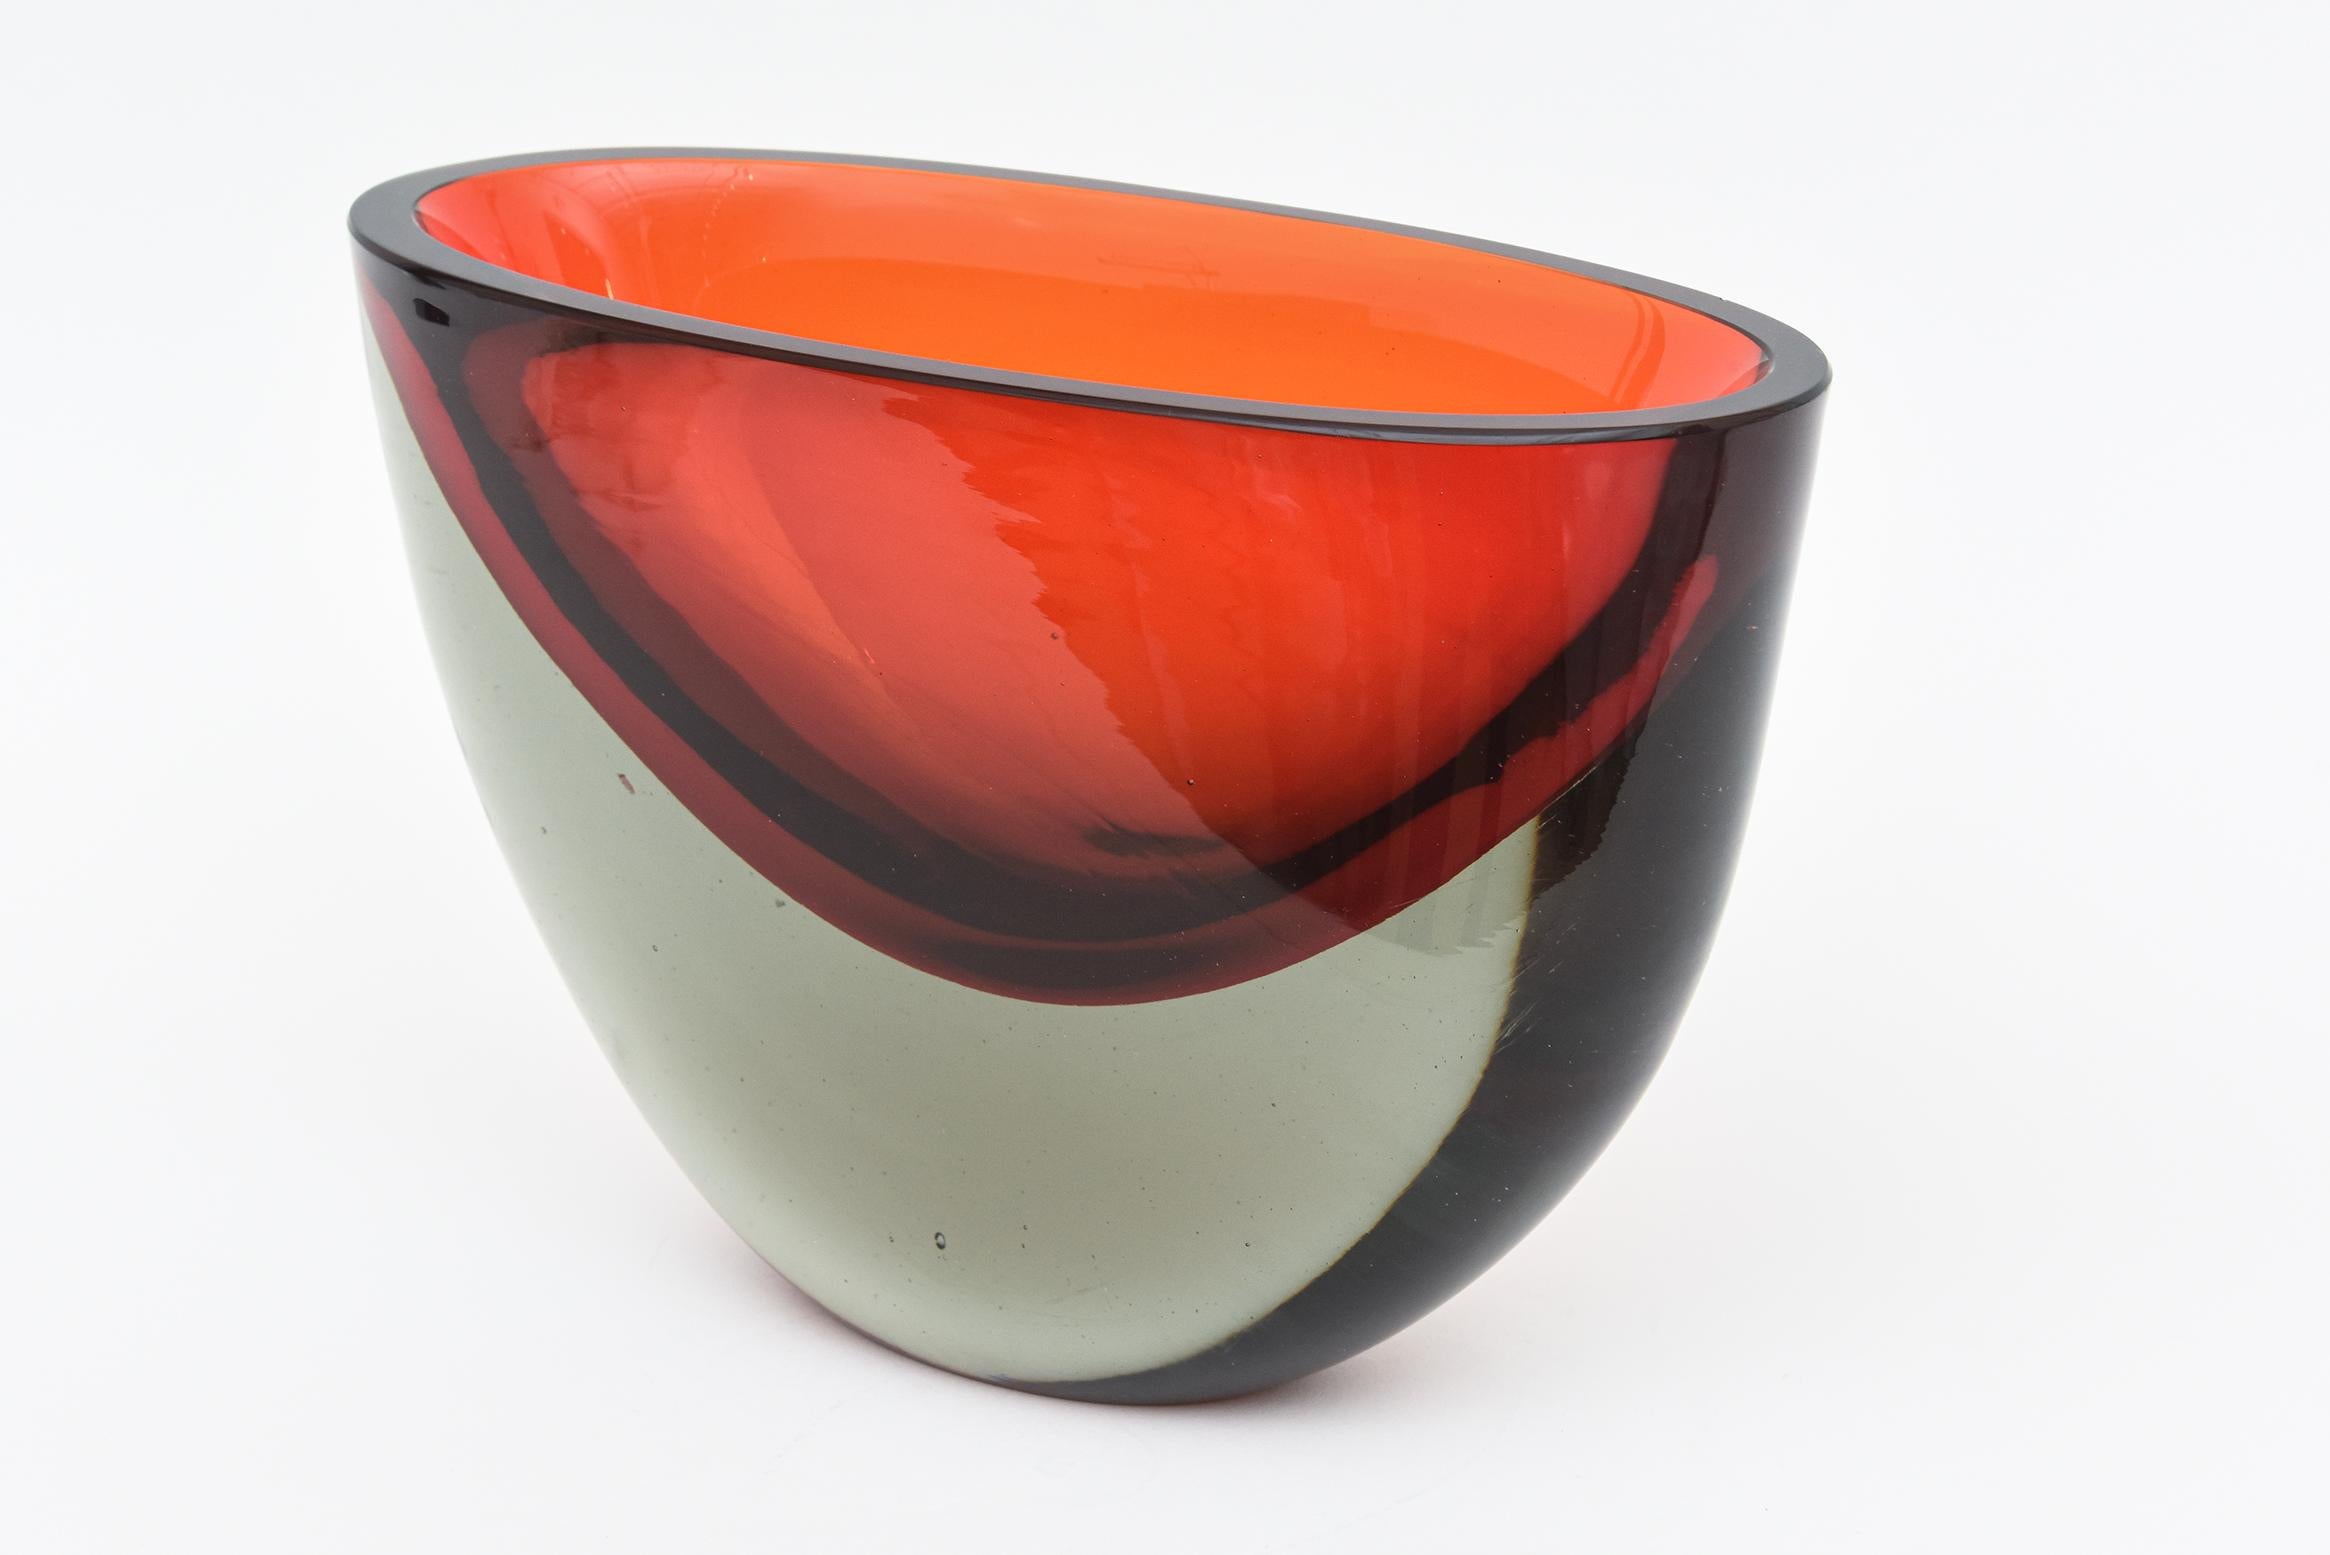 Ce très rare et lourd vase ou récipient en verre soufflé à la main à Murano est l'œuvre d'Antonio da Ros pour Cenedese et date des années 70. Il est taillé à plat, poli sur le dessus, et présente la technique sommerso qui va de dégradés de rouge,